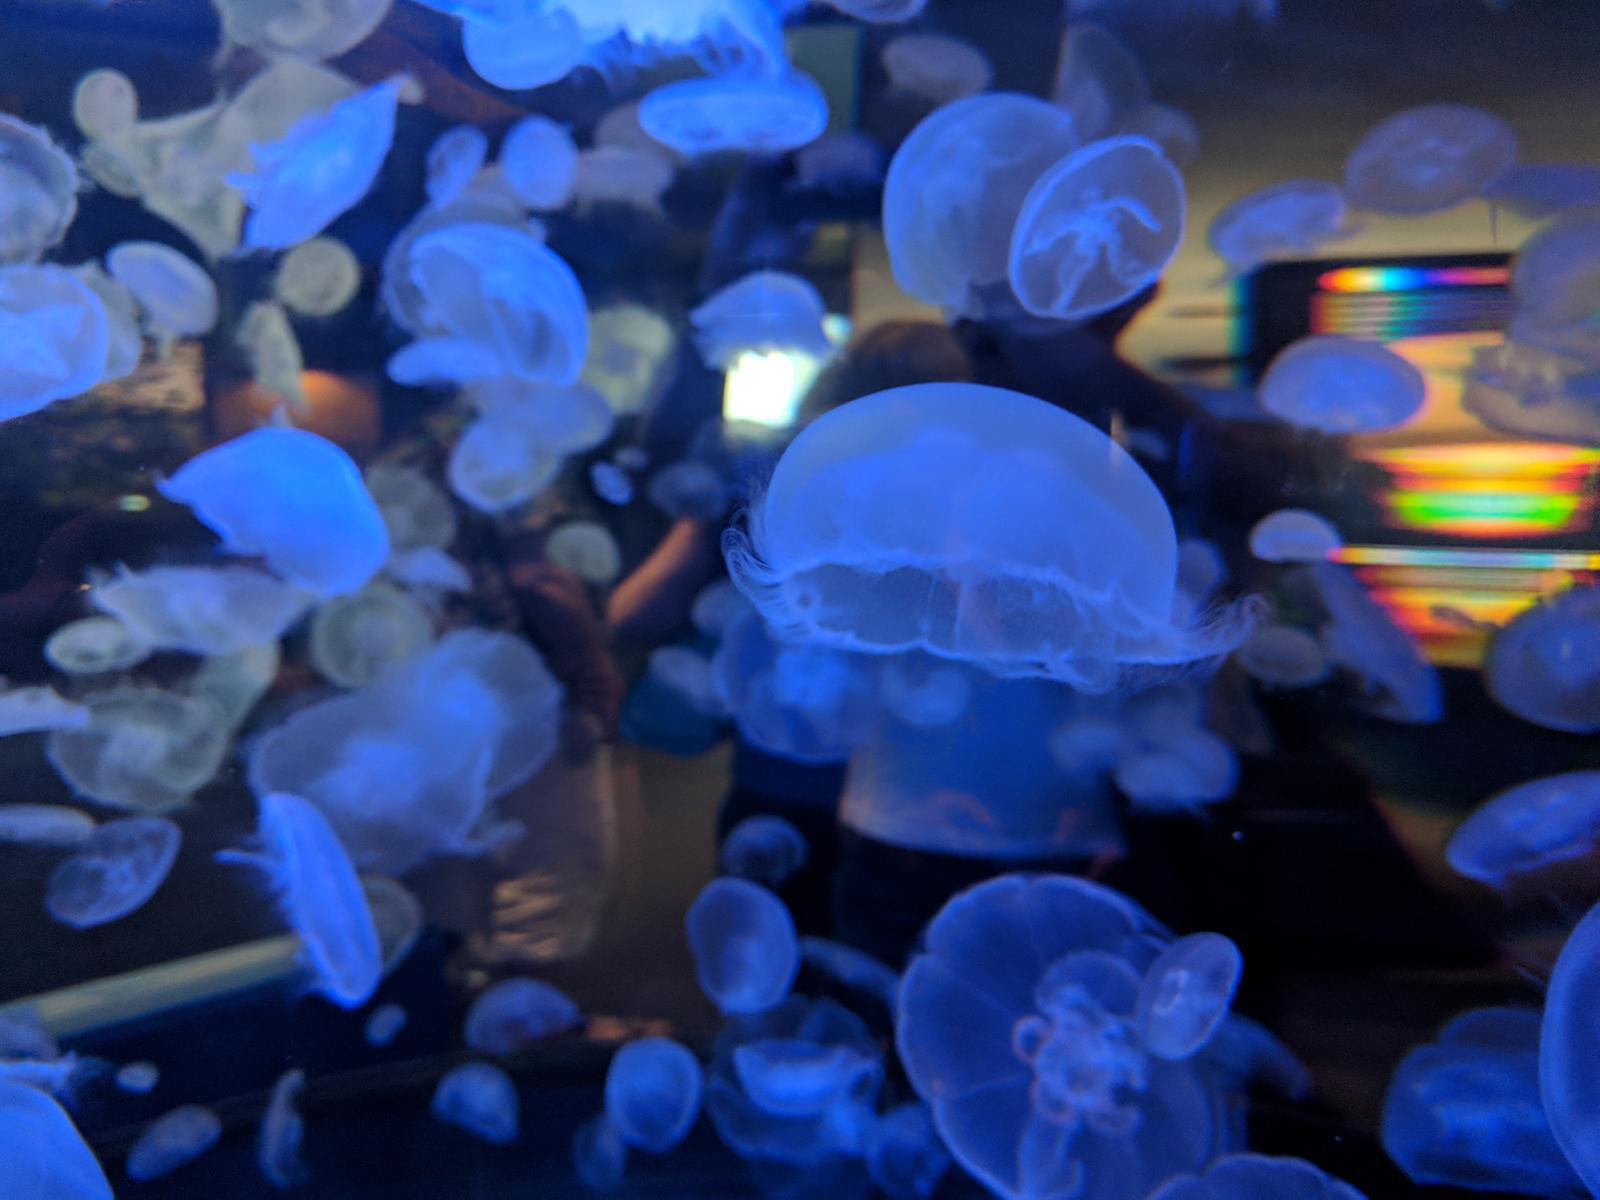 The Vancouver Aquarium